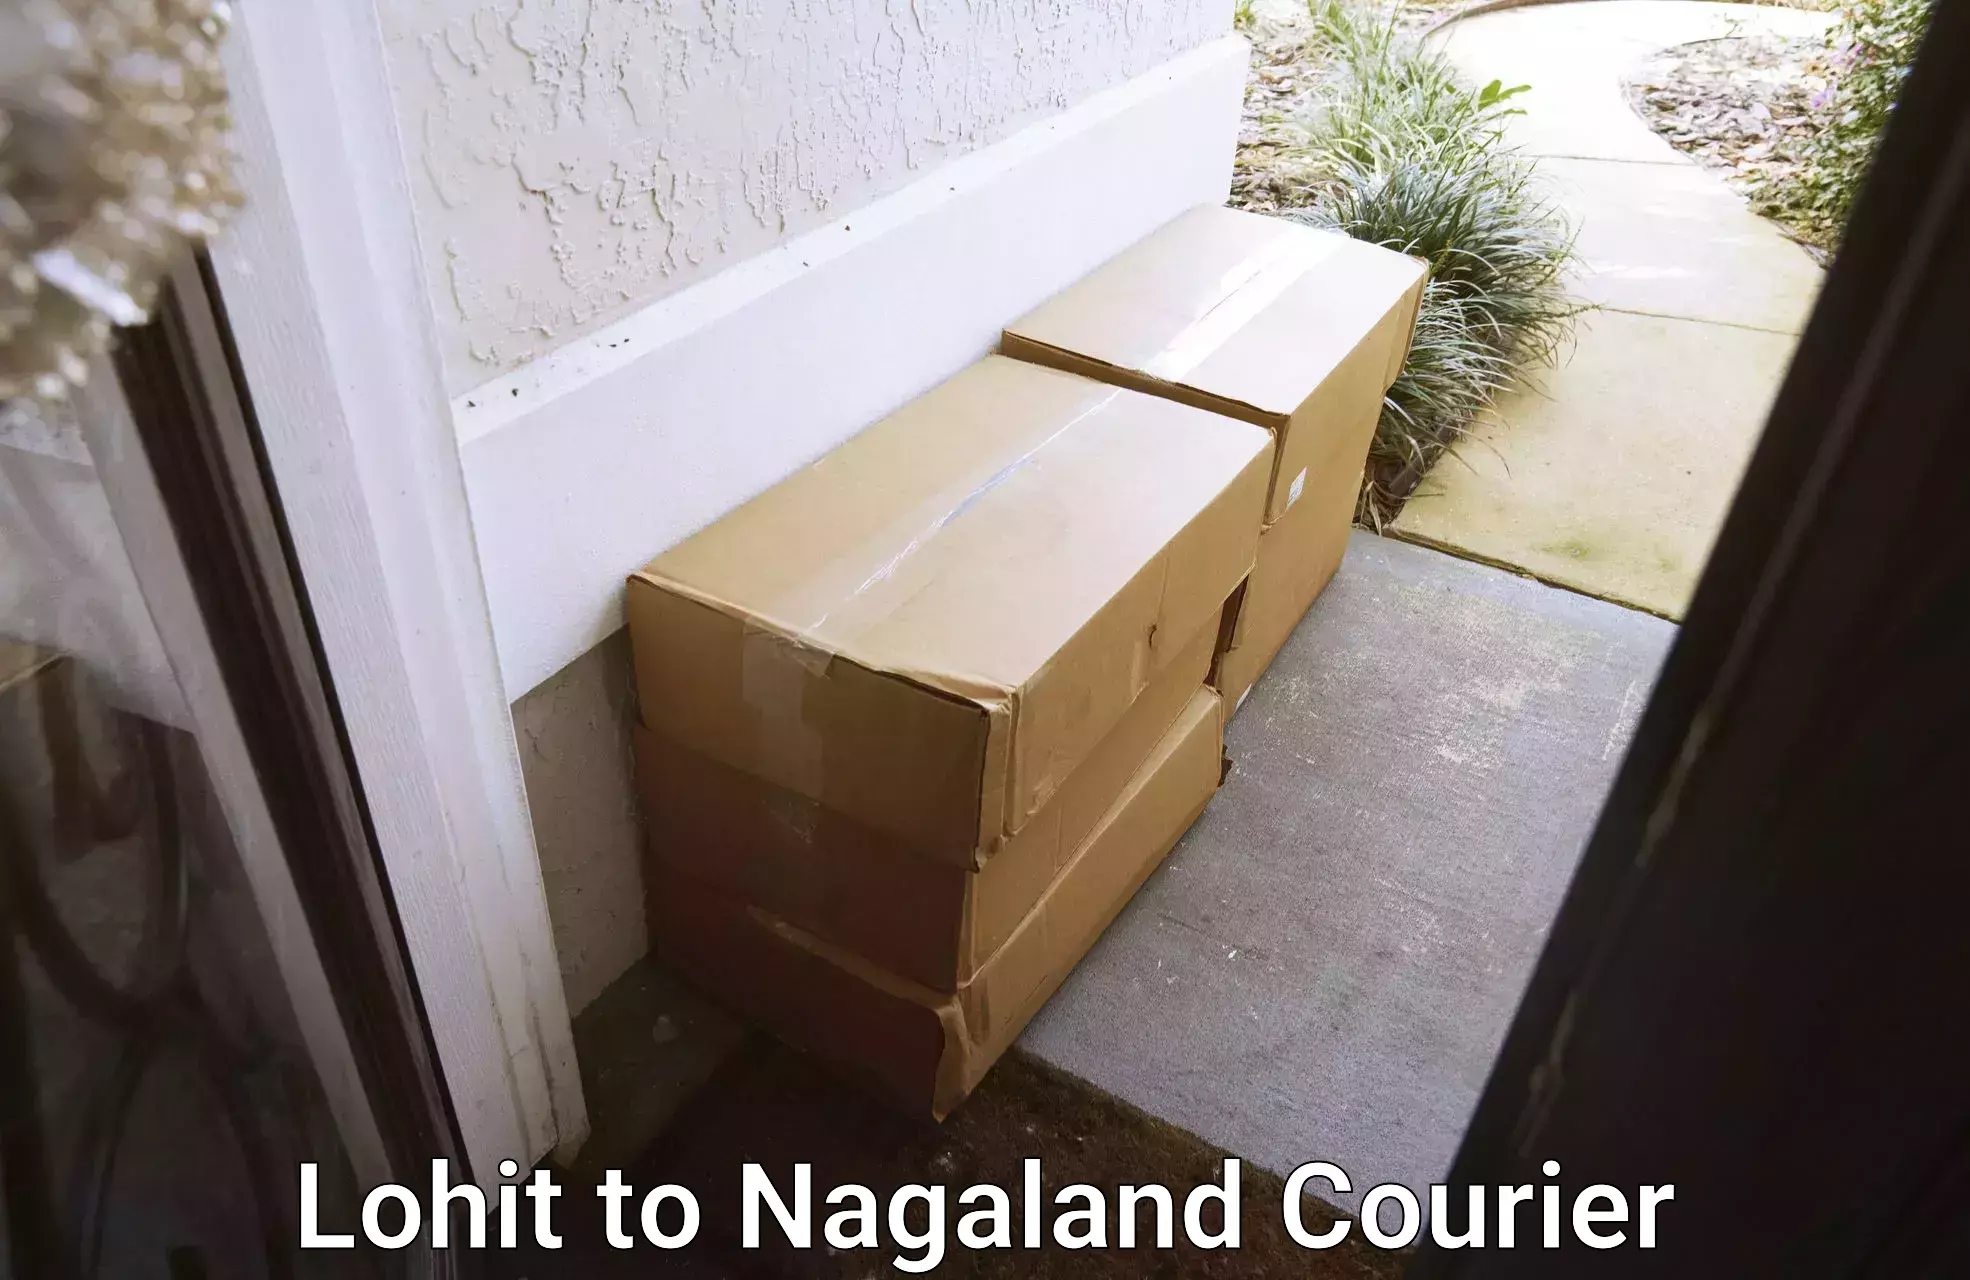 Efficient parcel service Lohit to Mon